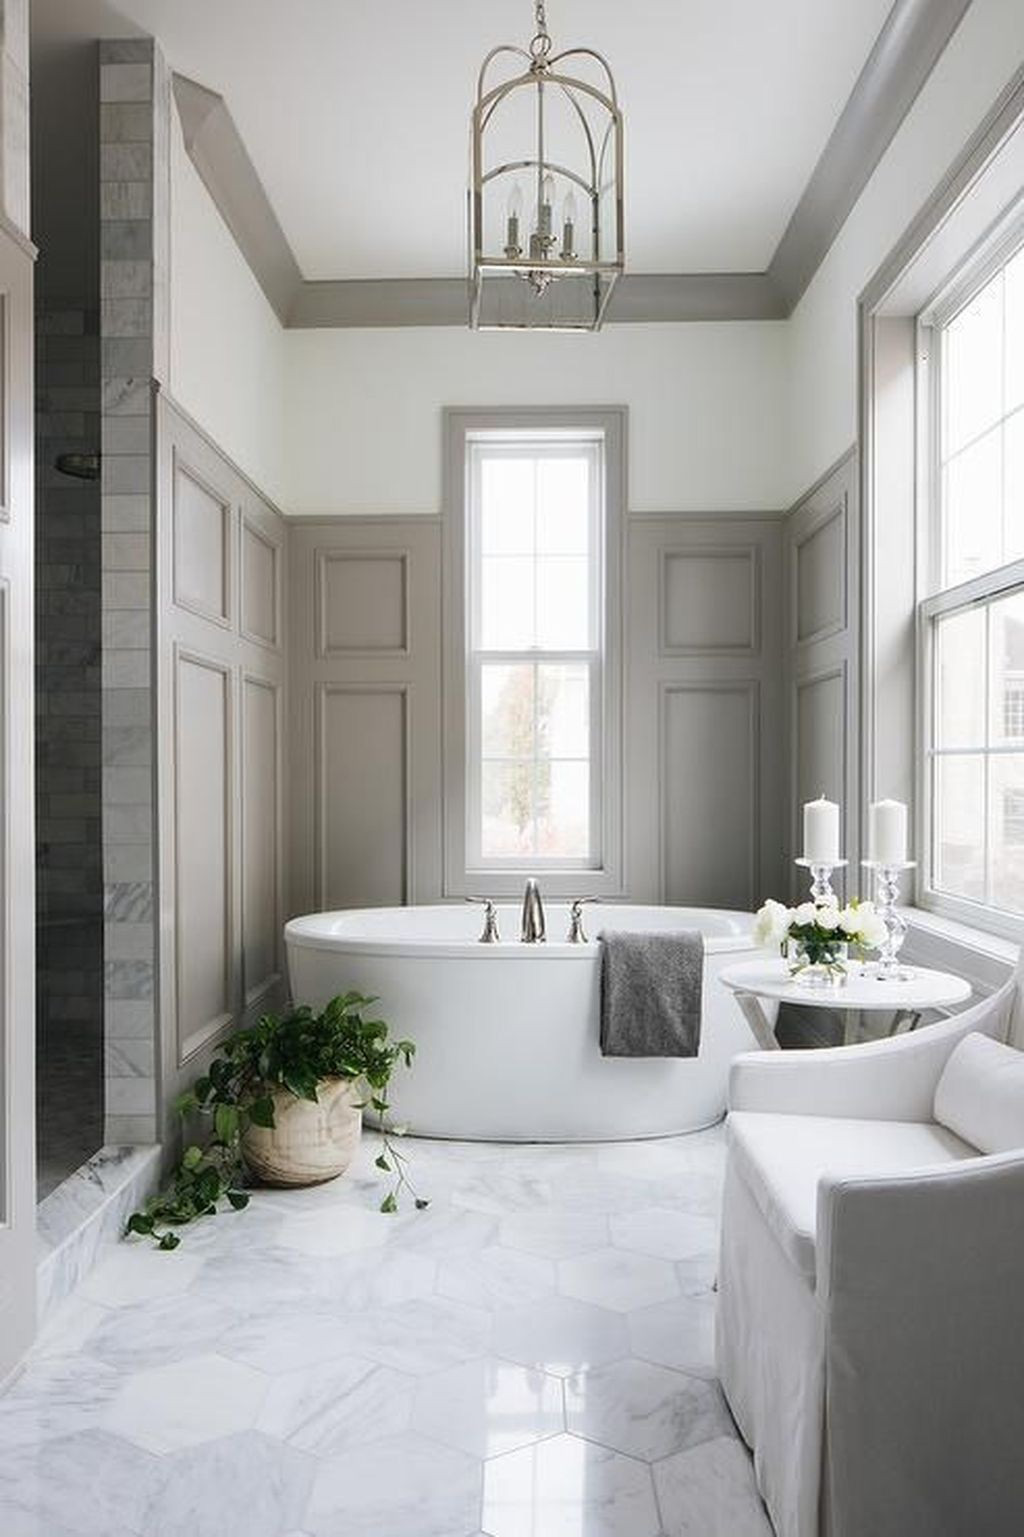  Một phòng tắm thanh lịch tuyệt đẹp được thực hiện với các tấm ốp màu xám nhạt, gạch lục giác bằng chất liệu đá cẩm thạch, đồ nội thất màu trắng và bồn tắm hình bầu dục hiện đại.